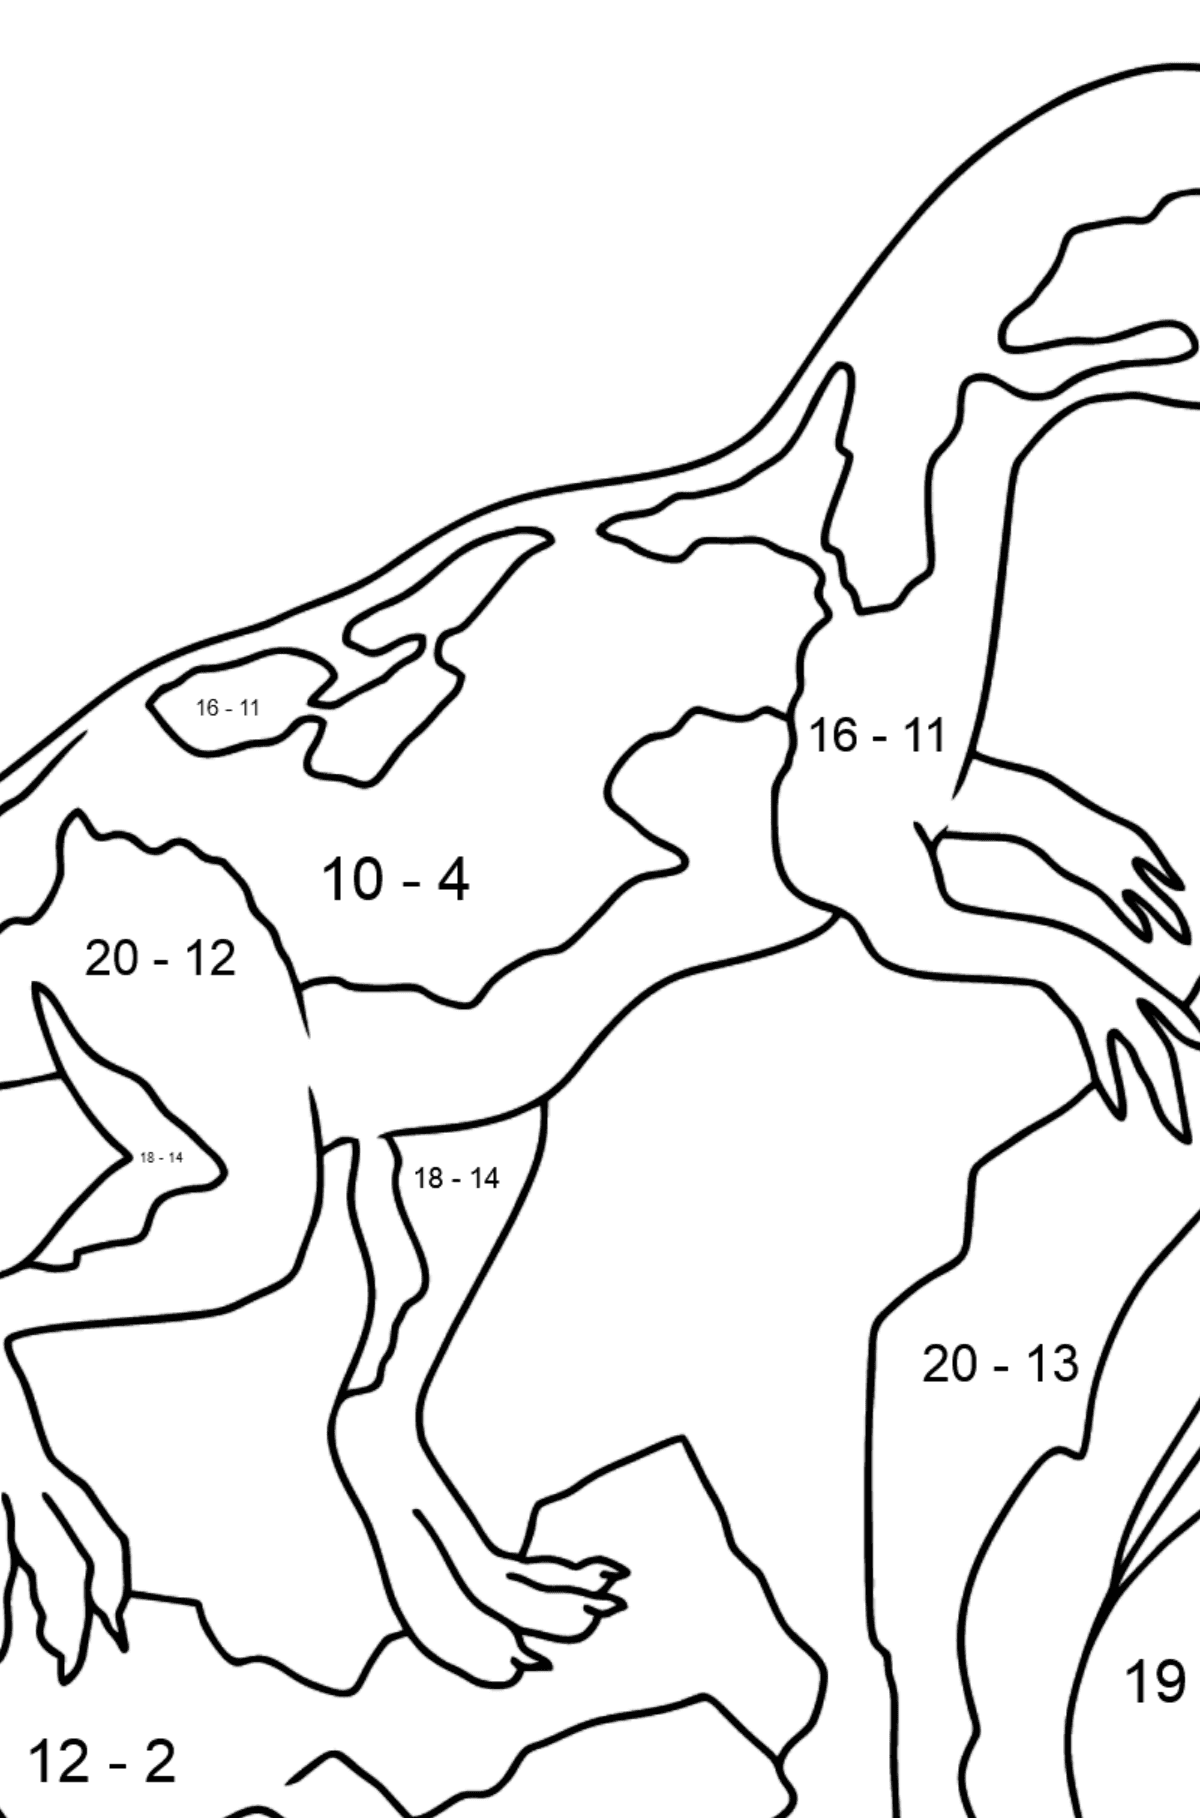 Dinossauro Jurássico para colorir - Colorindo com Matemática - Subtração para Crianças